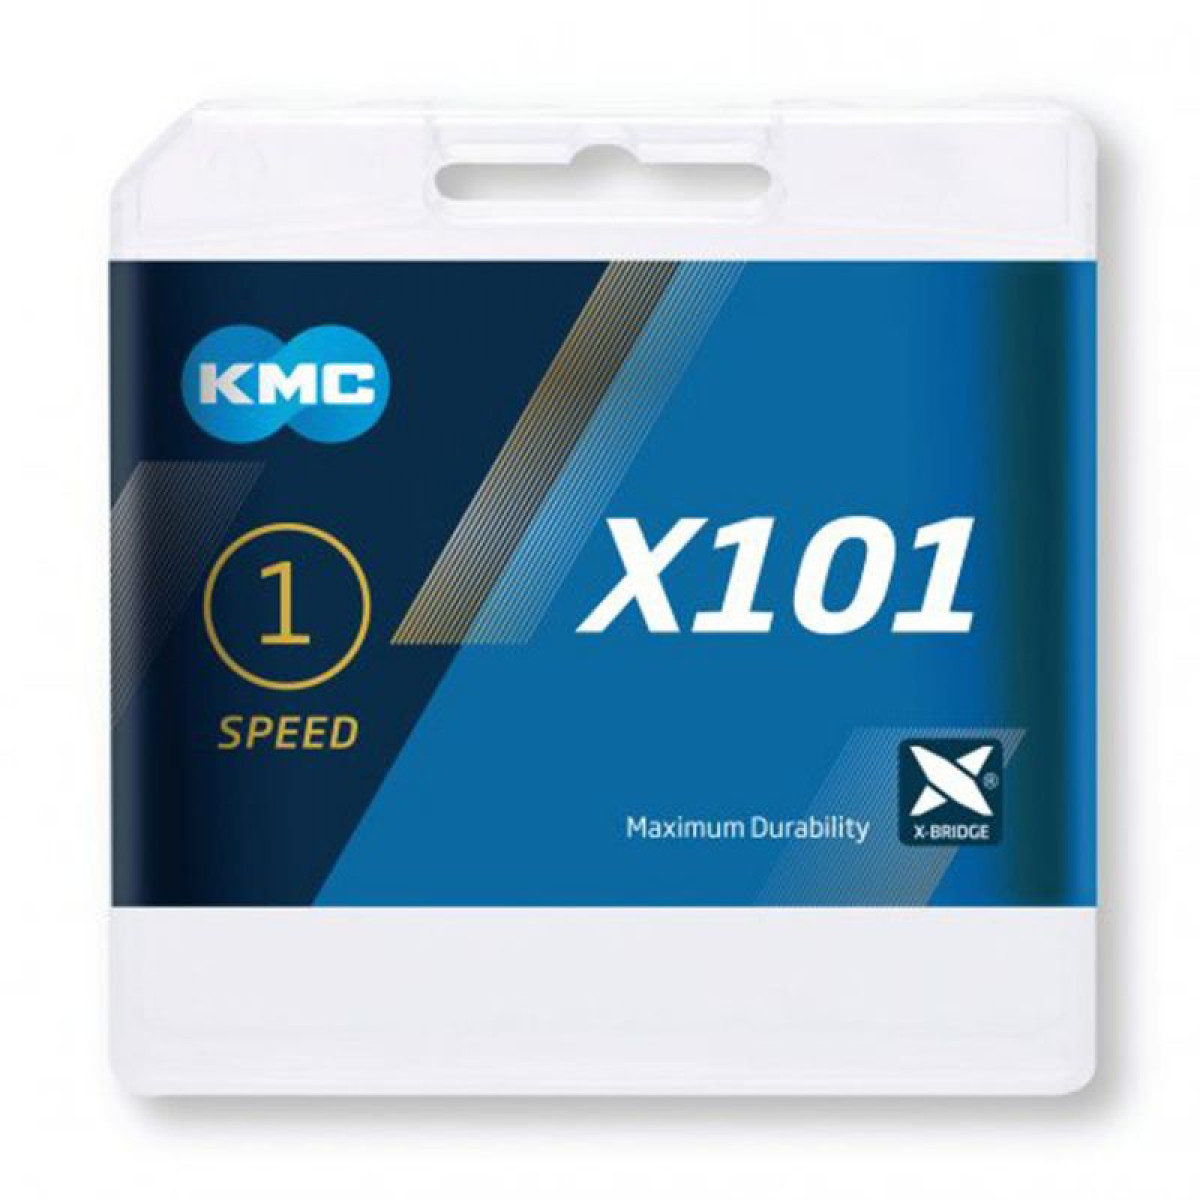 KMC X101 grandinė / 1 pavaros / Silver